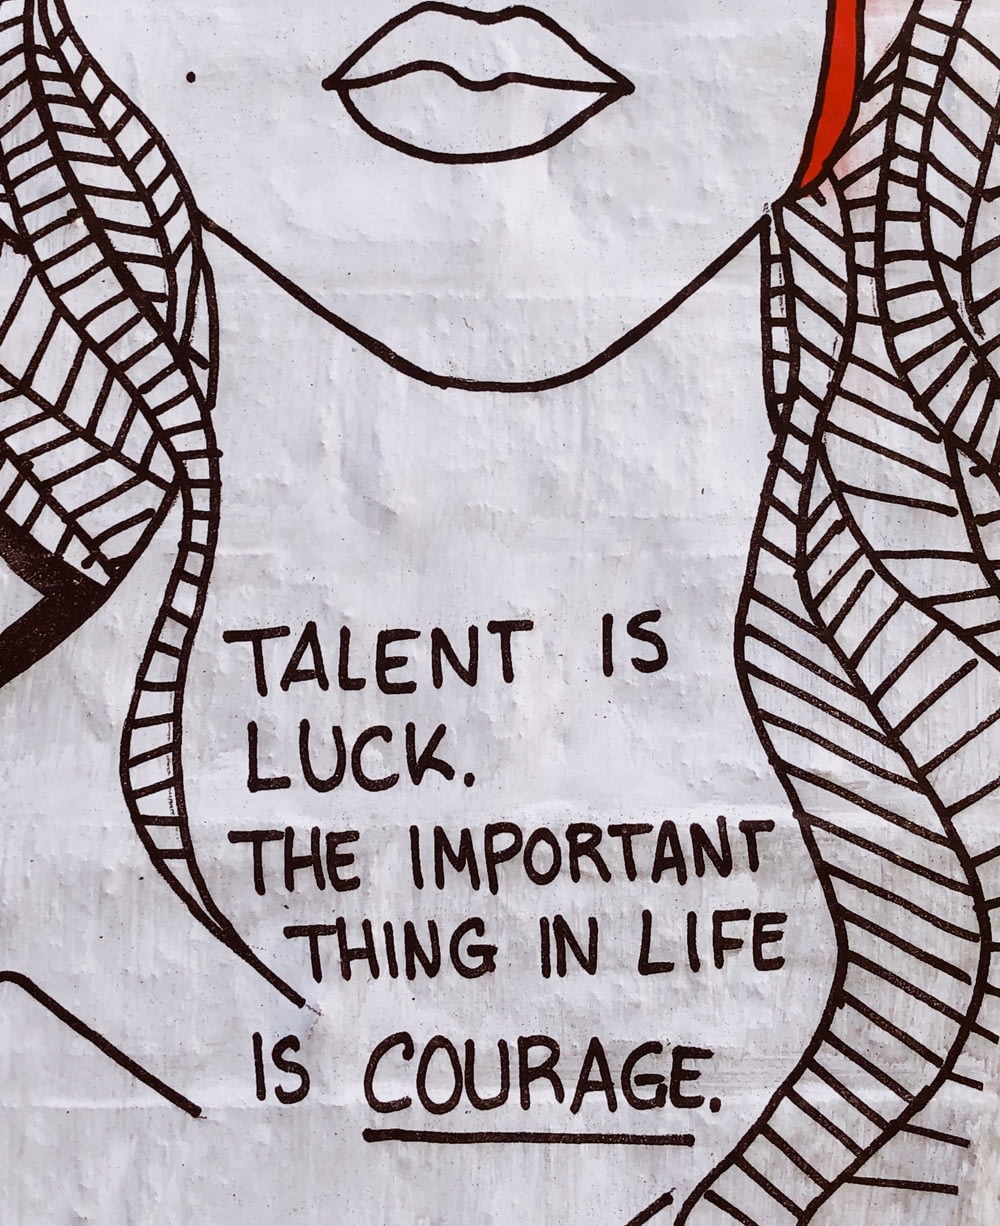 재능은 행운이다 인생에서 중요한 것은 용기